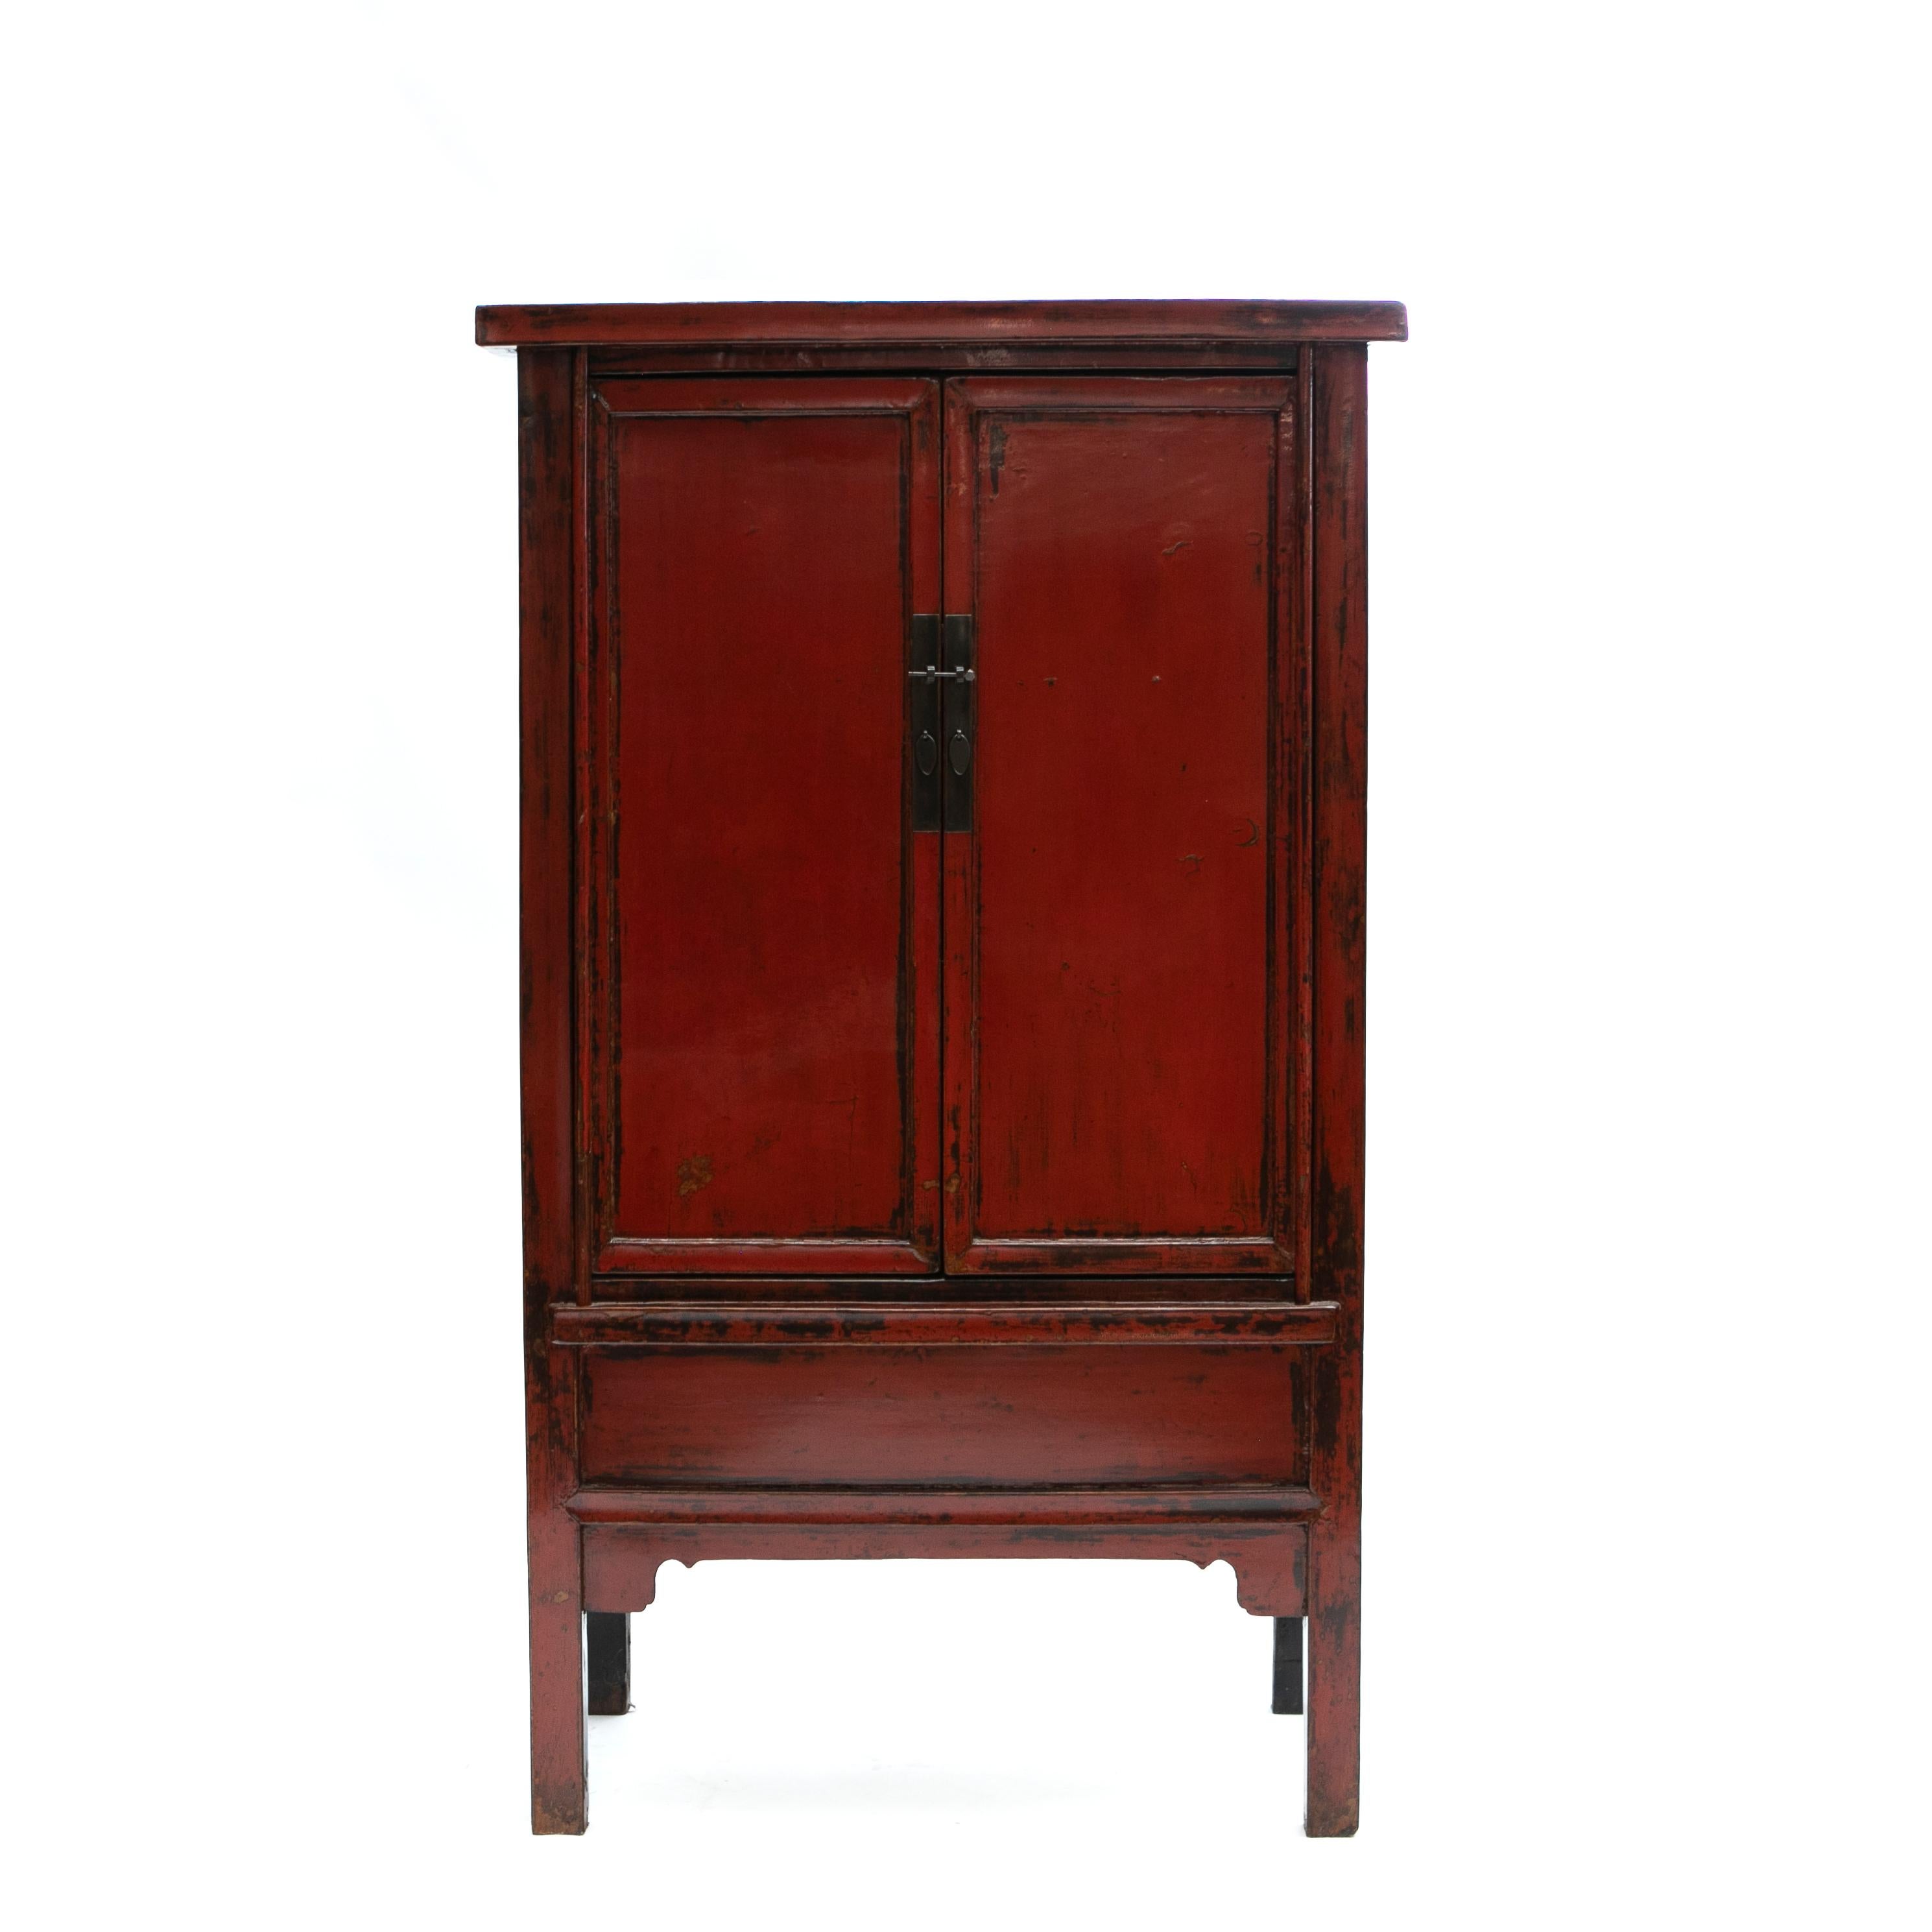 Cette étonnante paire d'armoires chinoises du début du XIXe siècle présente une façade en laque rouge contrastant avec des côtés en laque noire.
Chaque meuble présente une paire de portes qui s'ouvrent grâce à une serrure métallique pour révéler des